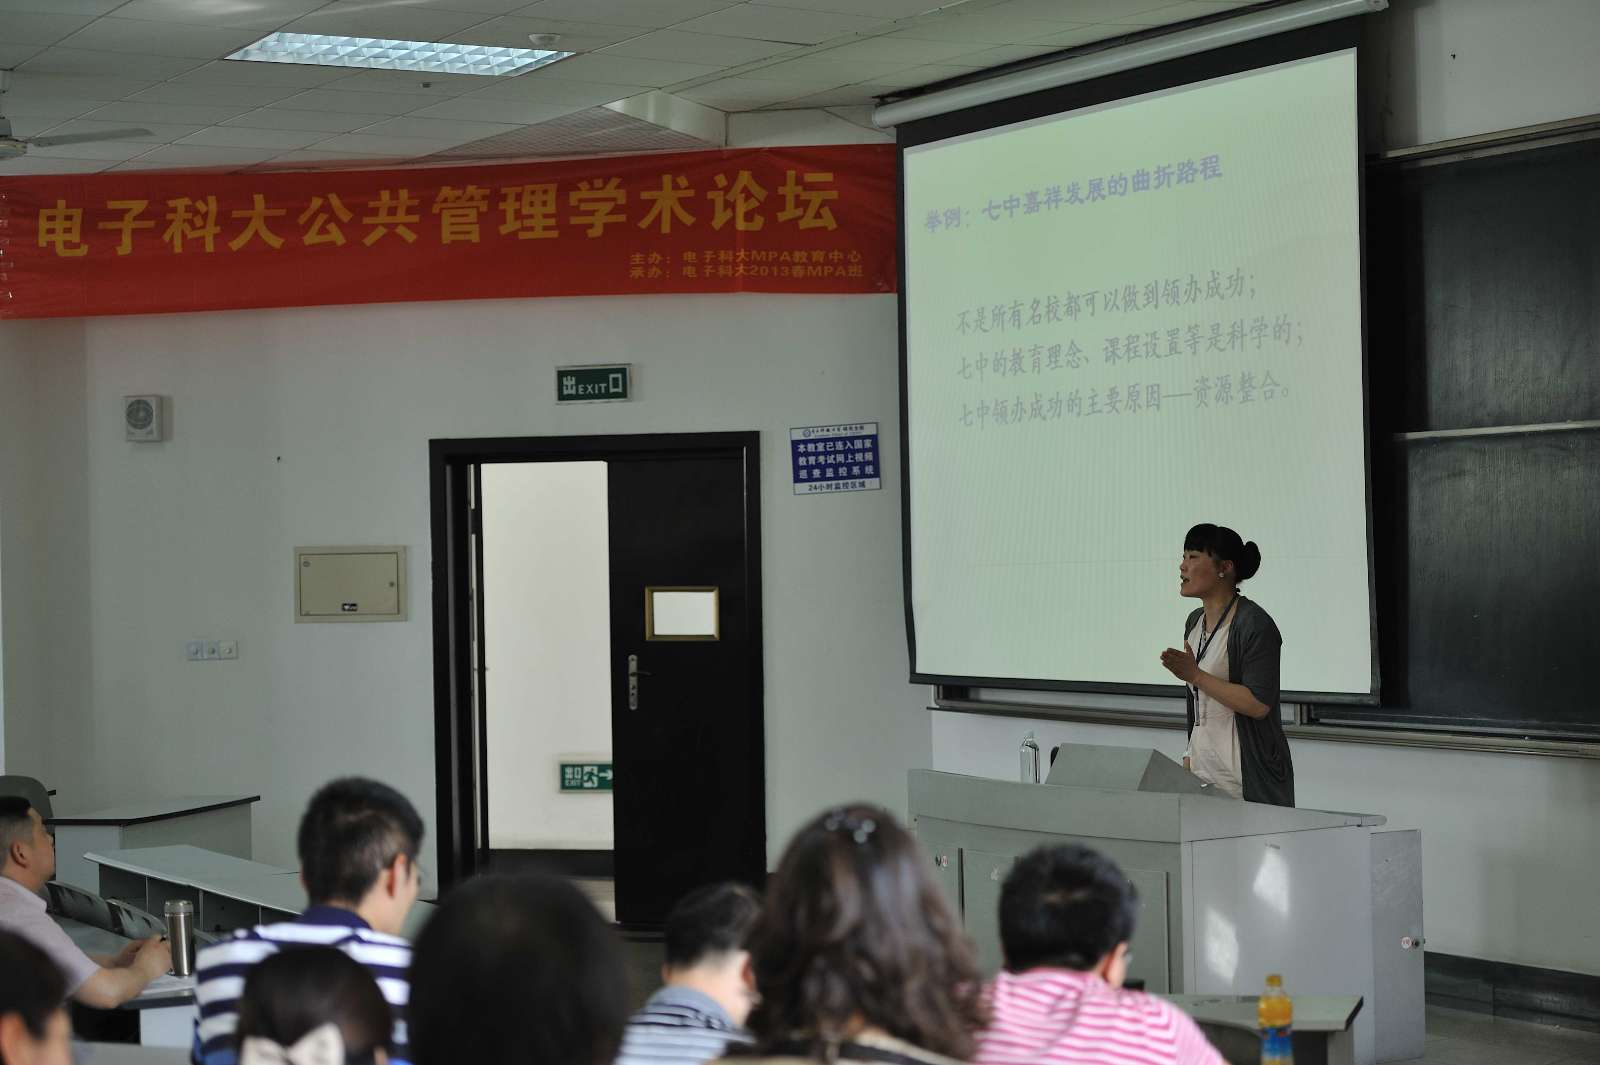 2013年5月史玉川在電子科技大學作講座